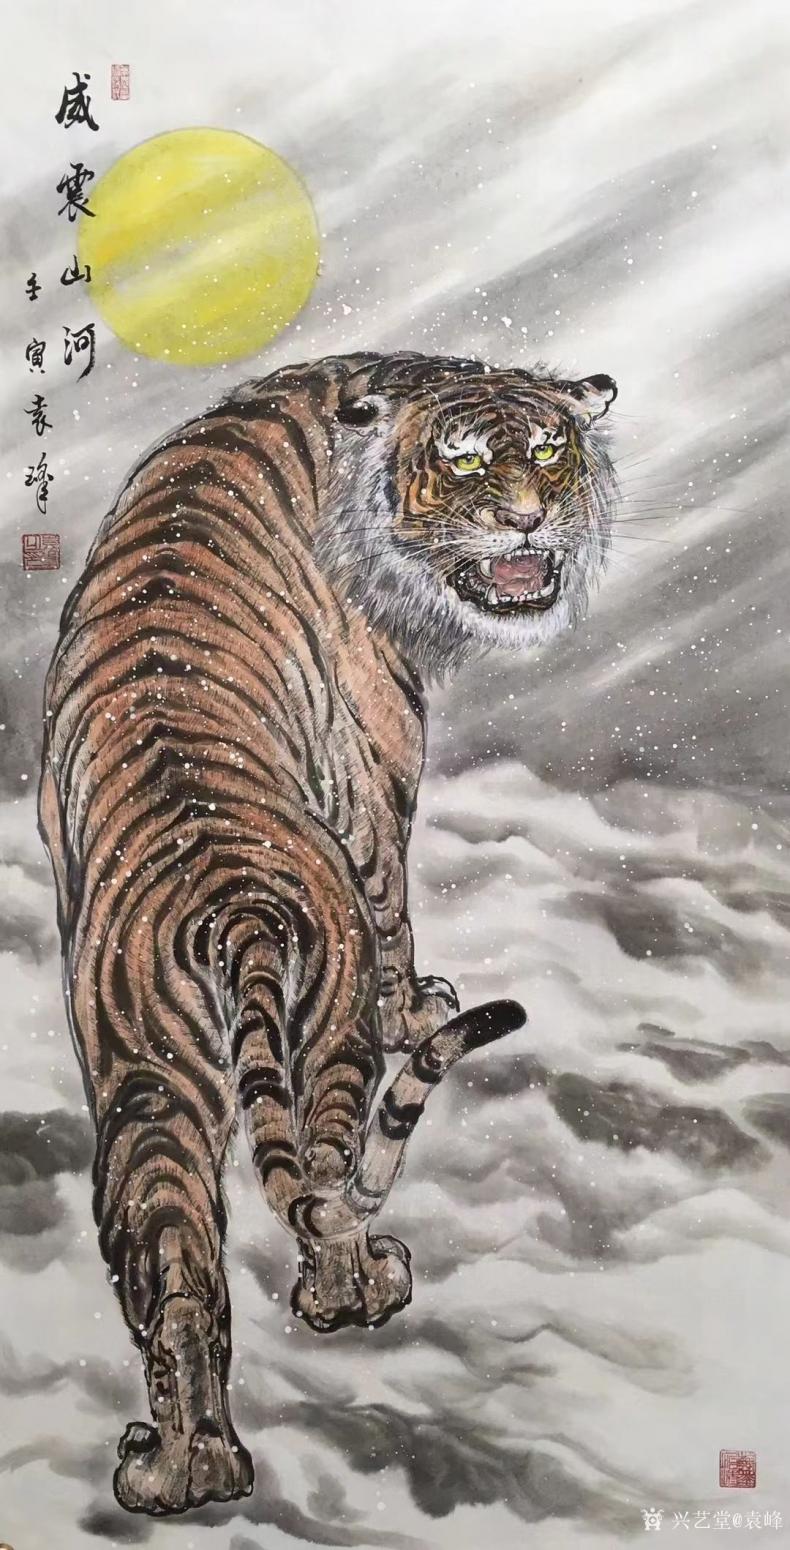 袁峰国画作品《虎-威震山河》